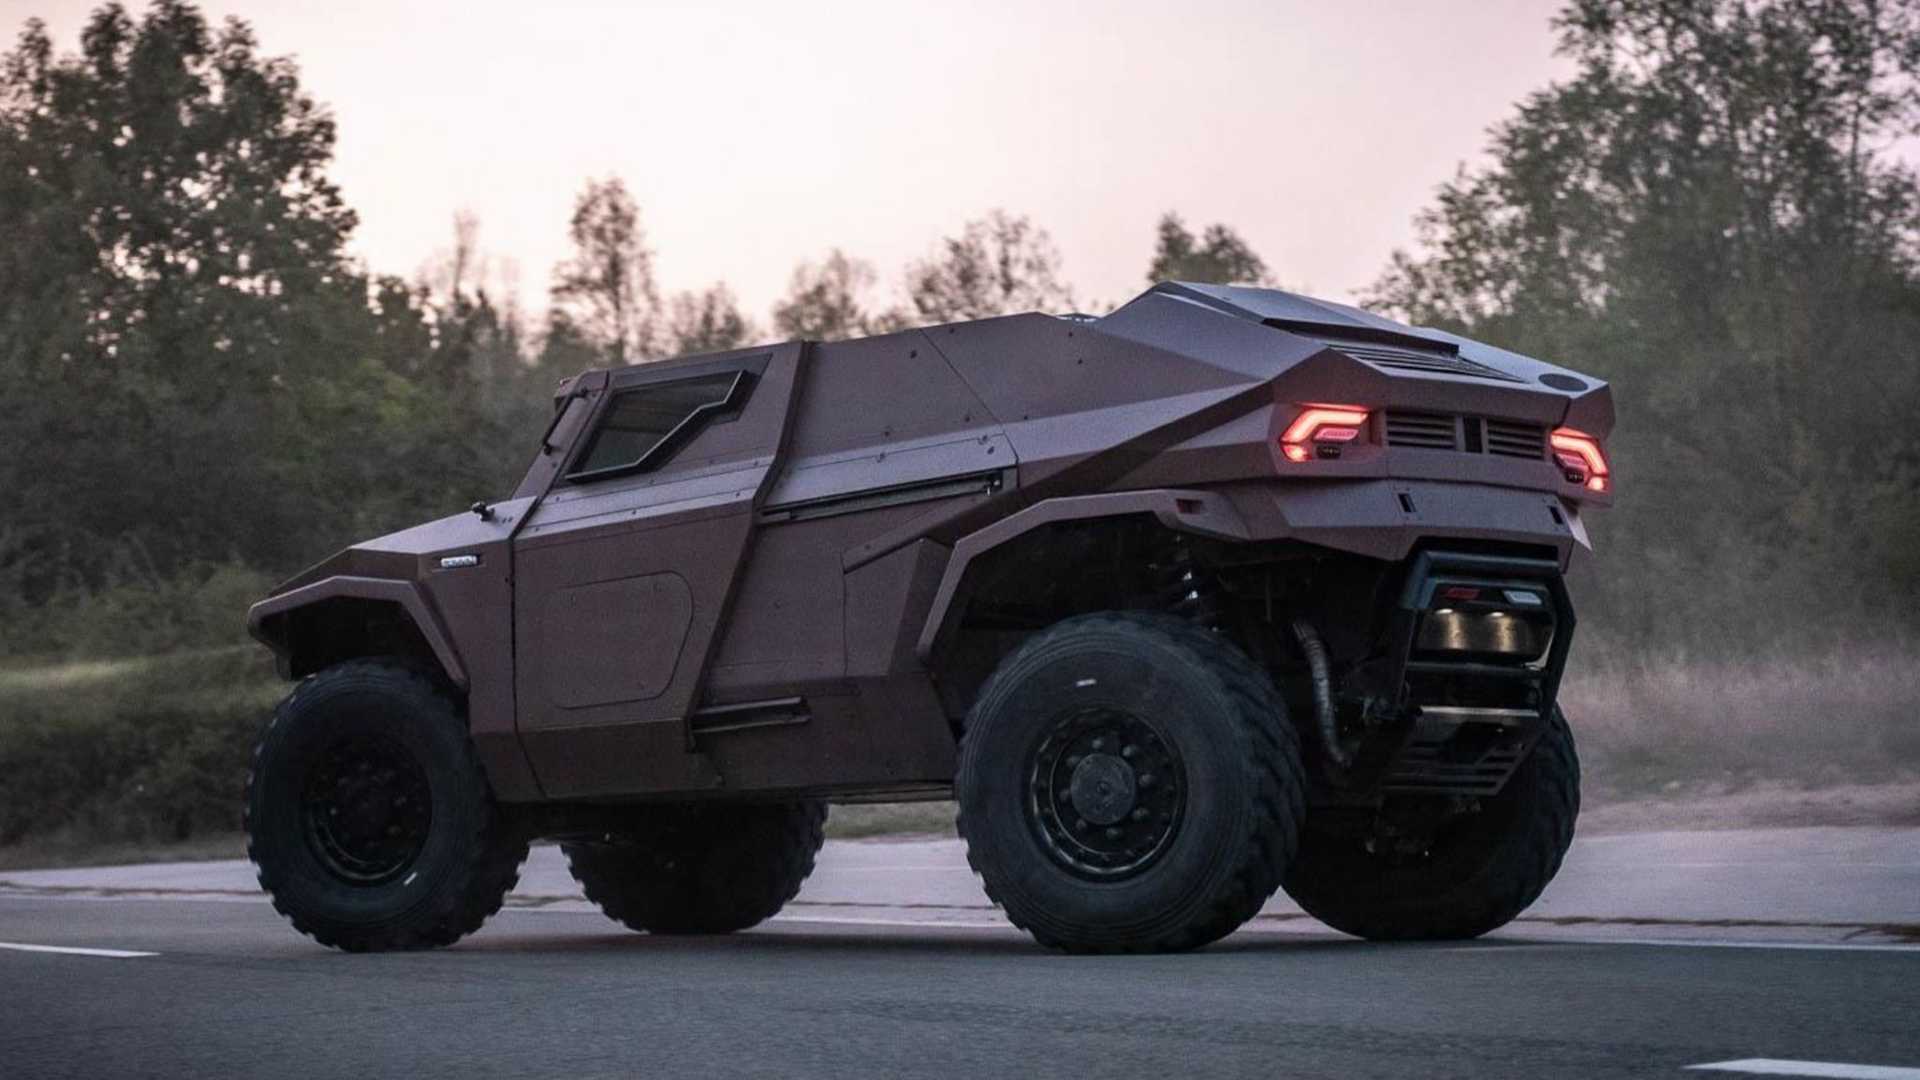 نمای جانبی شاسی بلند نظامی آرکیوس اسکارابی / Arquus Scarabee Hybrid Military SUV